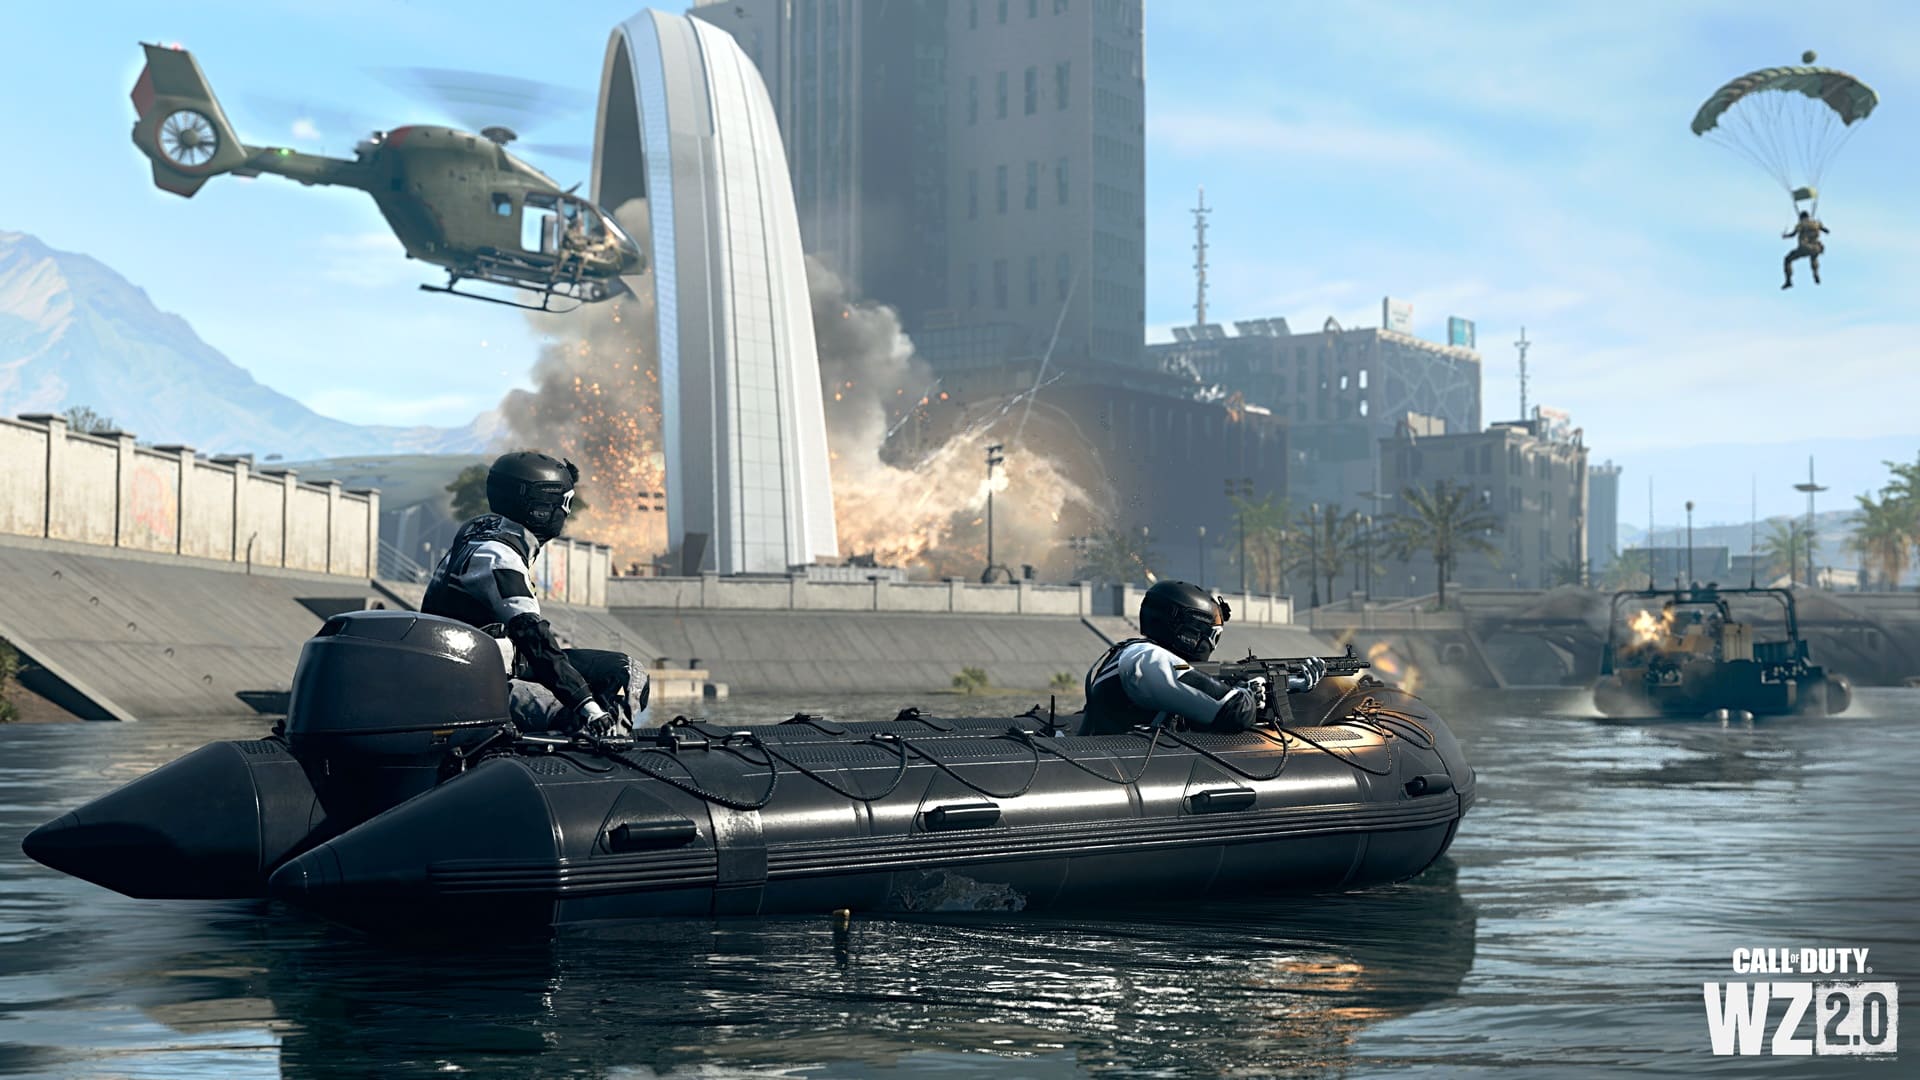 (Warzone2でもキャンペーンやマルチプレイと同様に、ボートや水中での戦闘が可能です。)